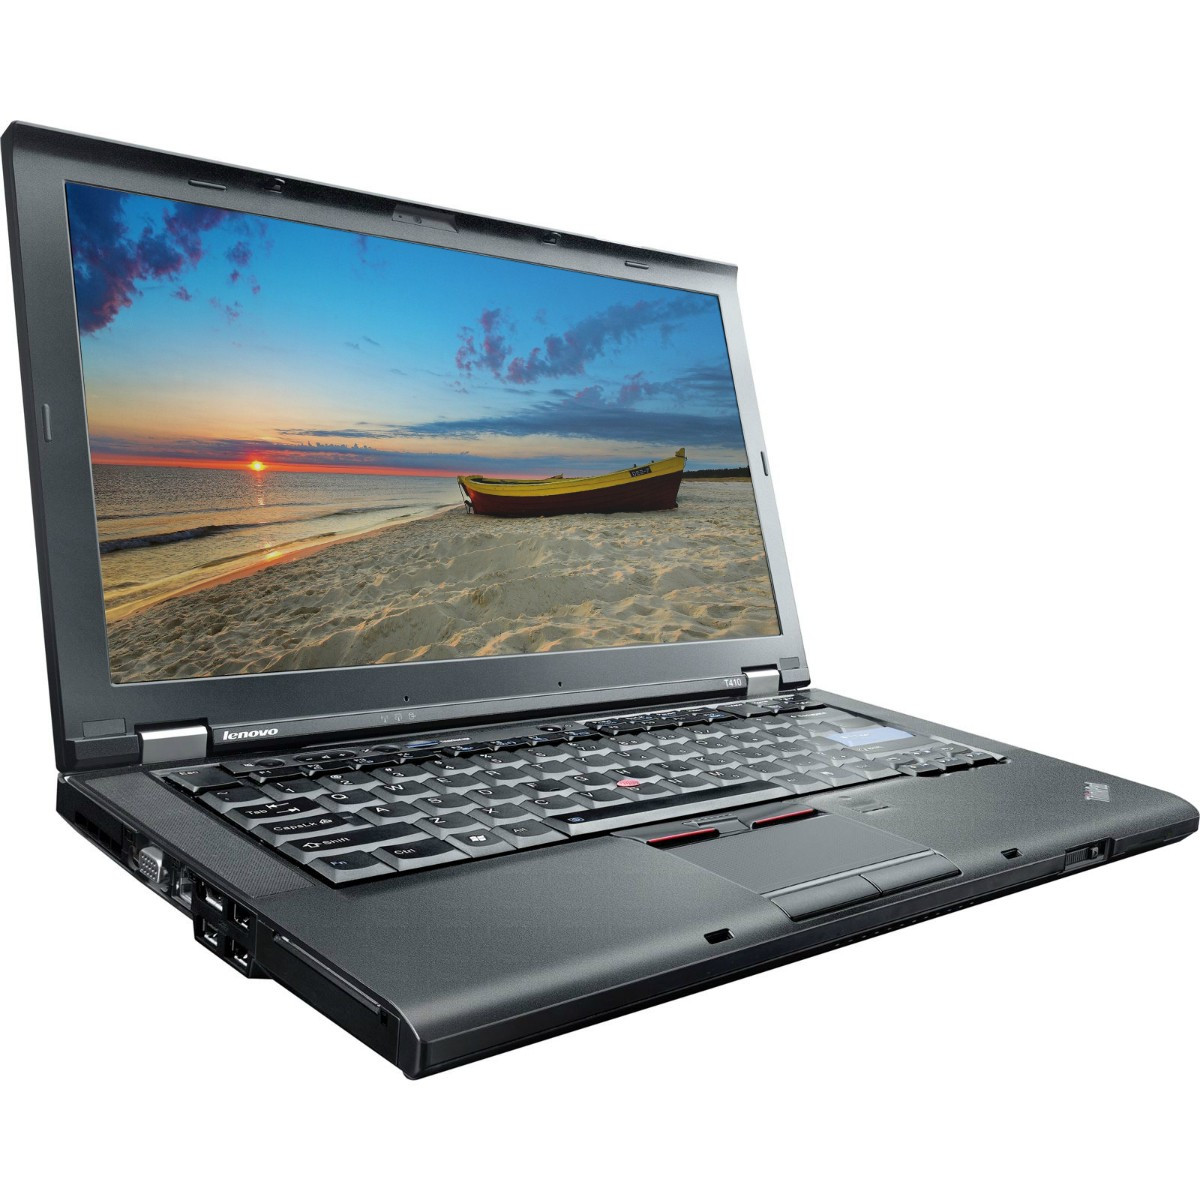 Refurbished Lenovo ThinkPad T410i Core i3 laptop on SALE